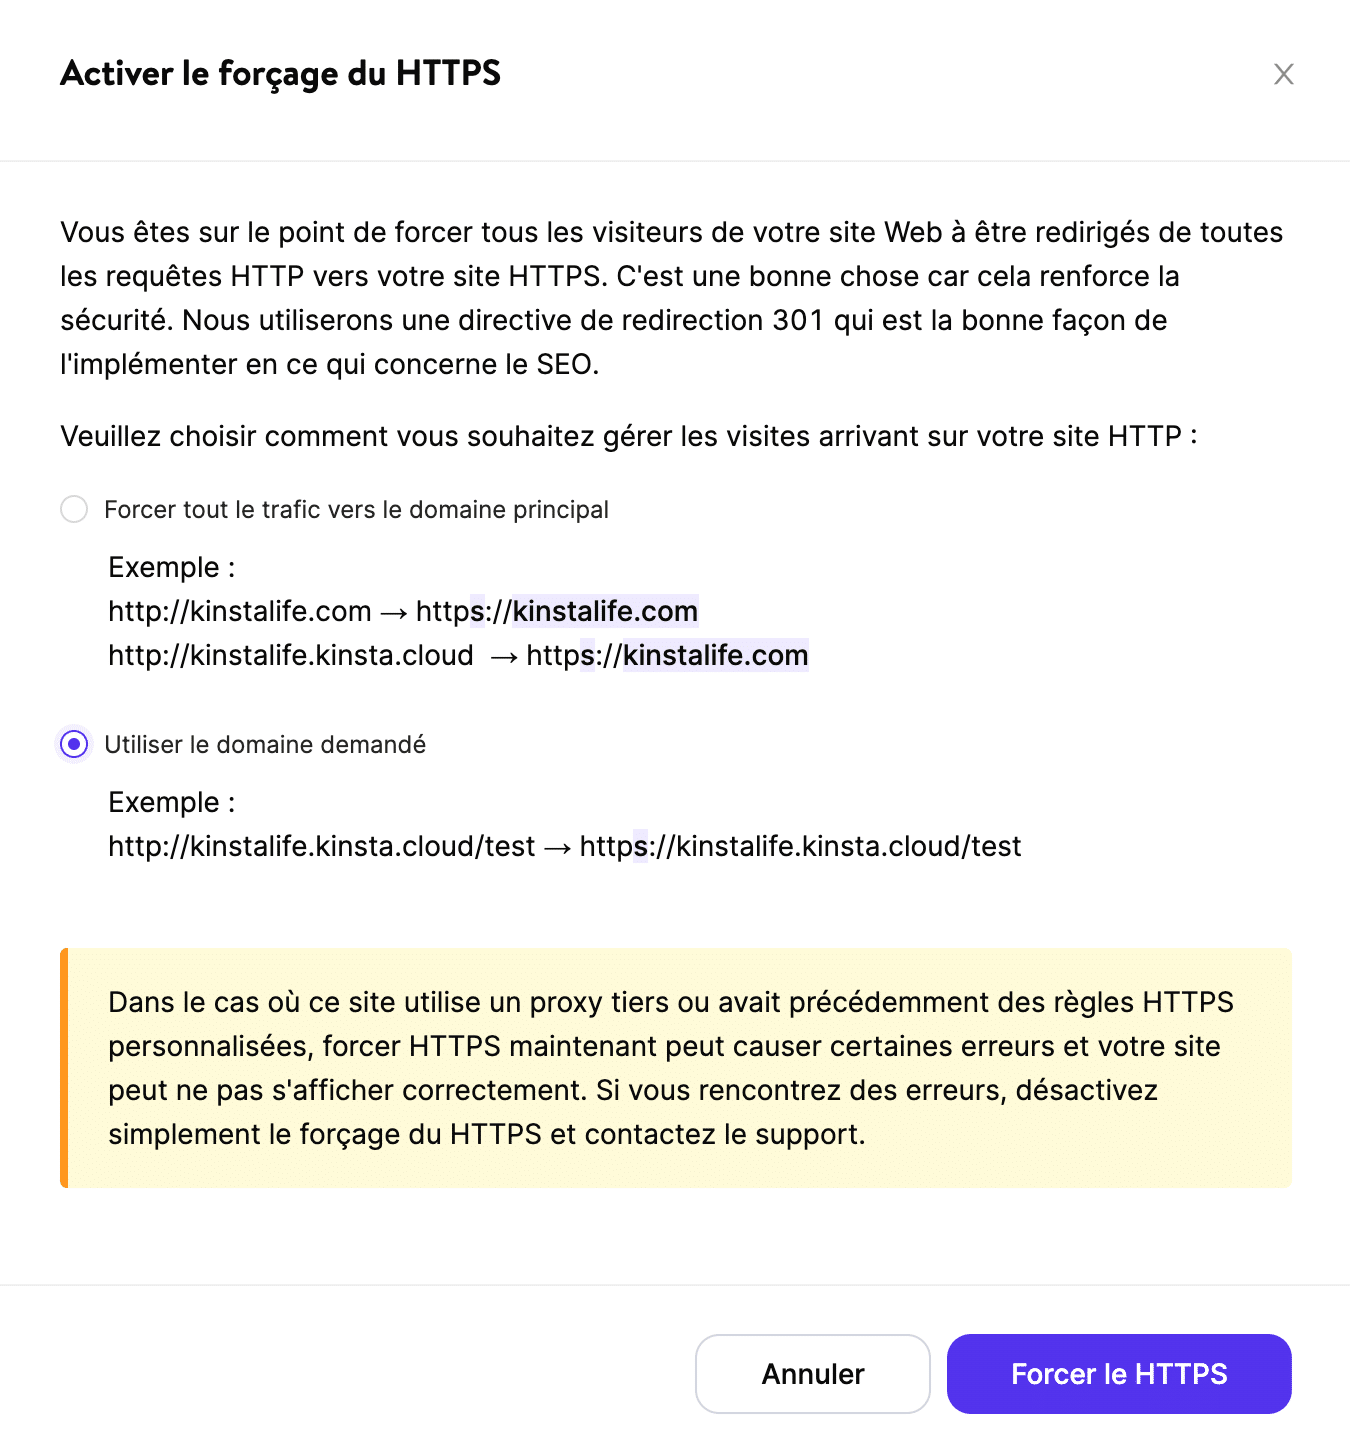 Confirmer l'activation de Forcer le HTTPS.